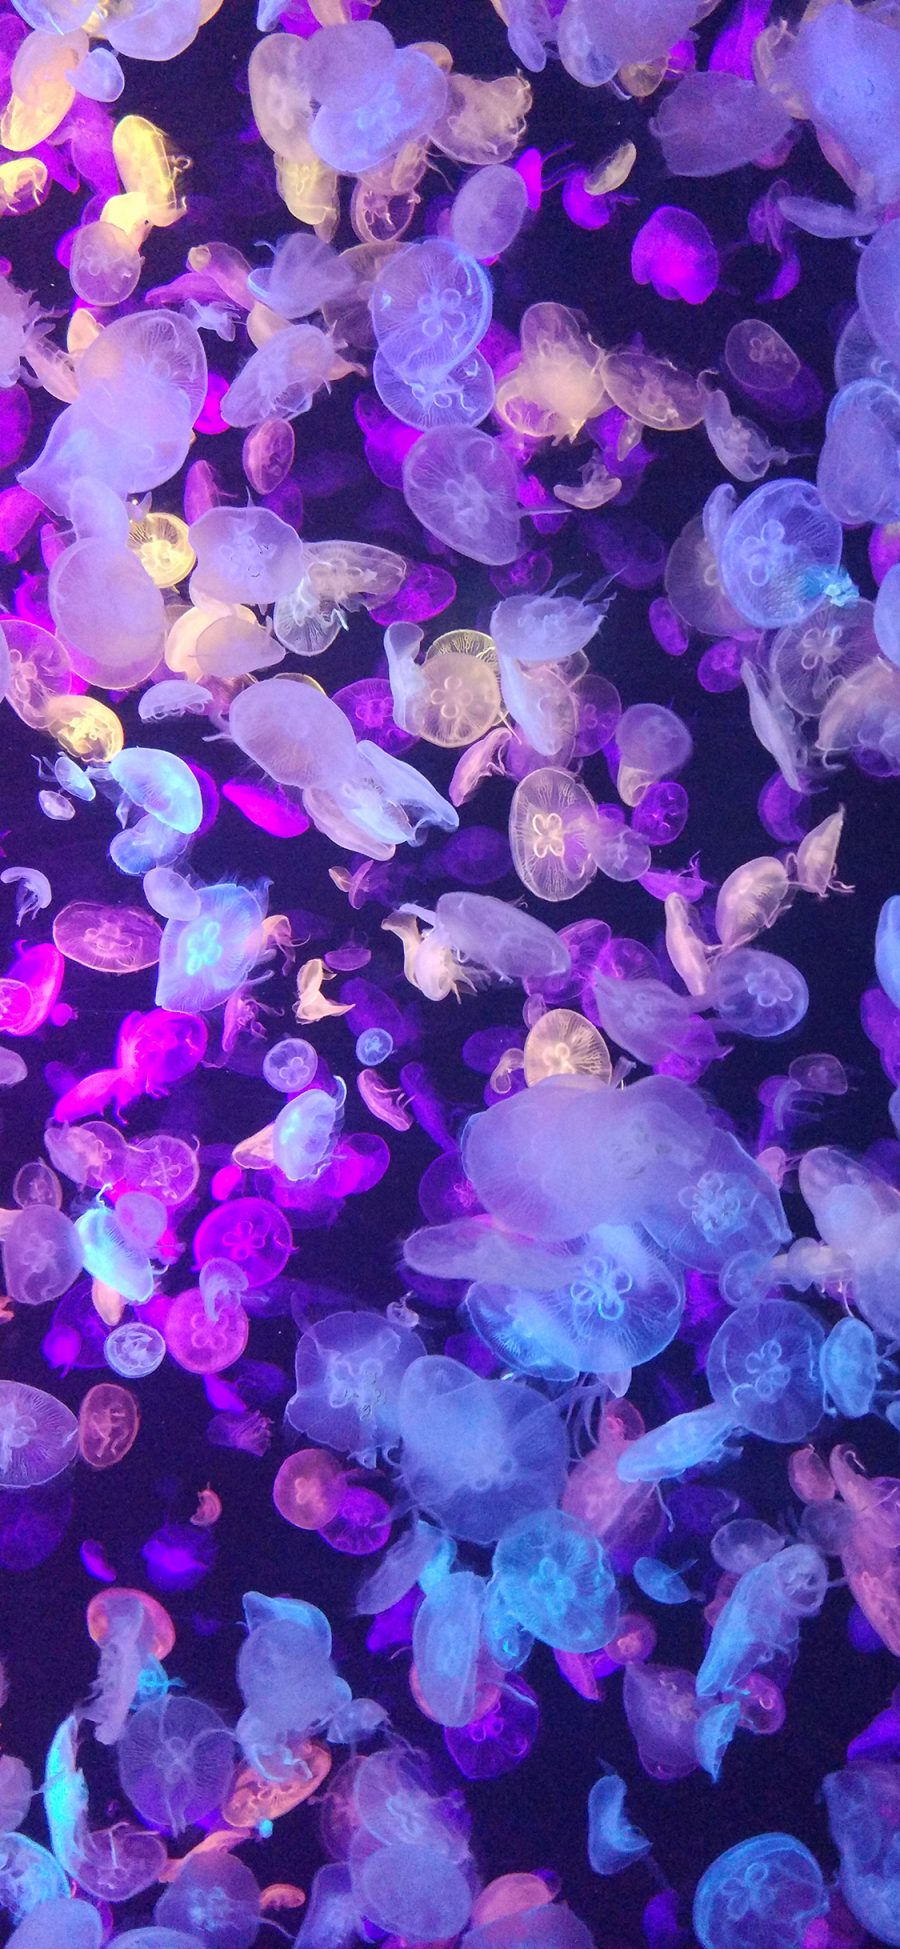 [2436×1125]海洋生物 水母 密集 海蜇 苹果手机壁纸图片